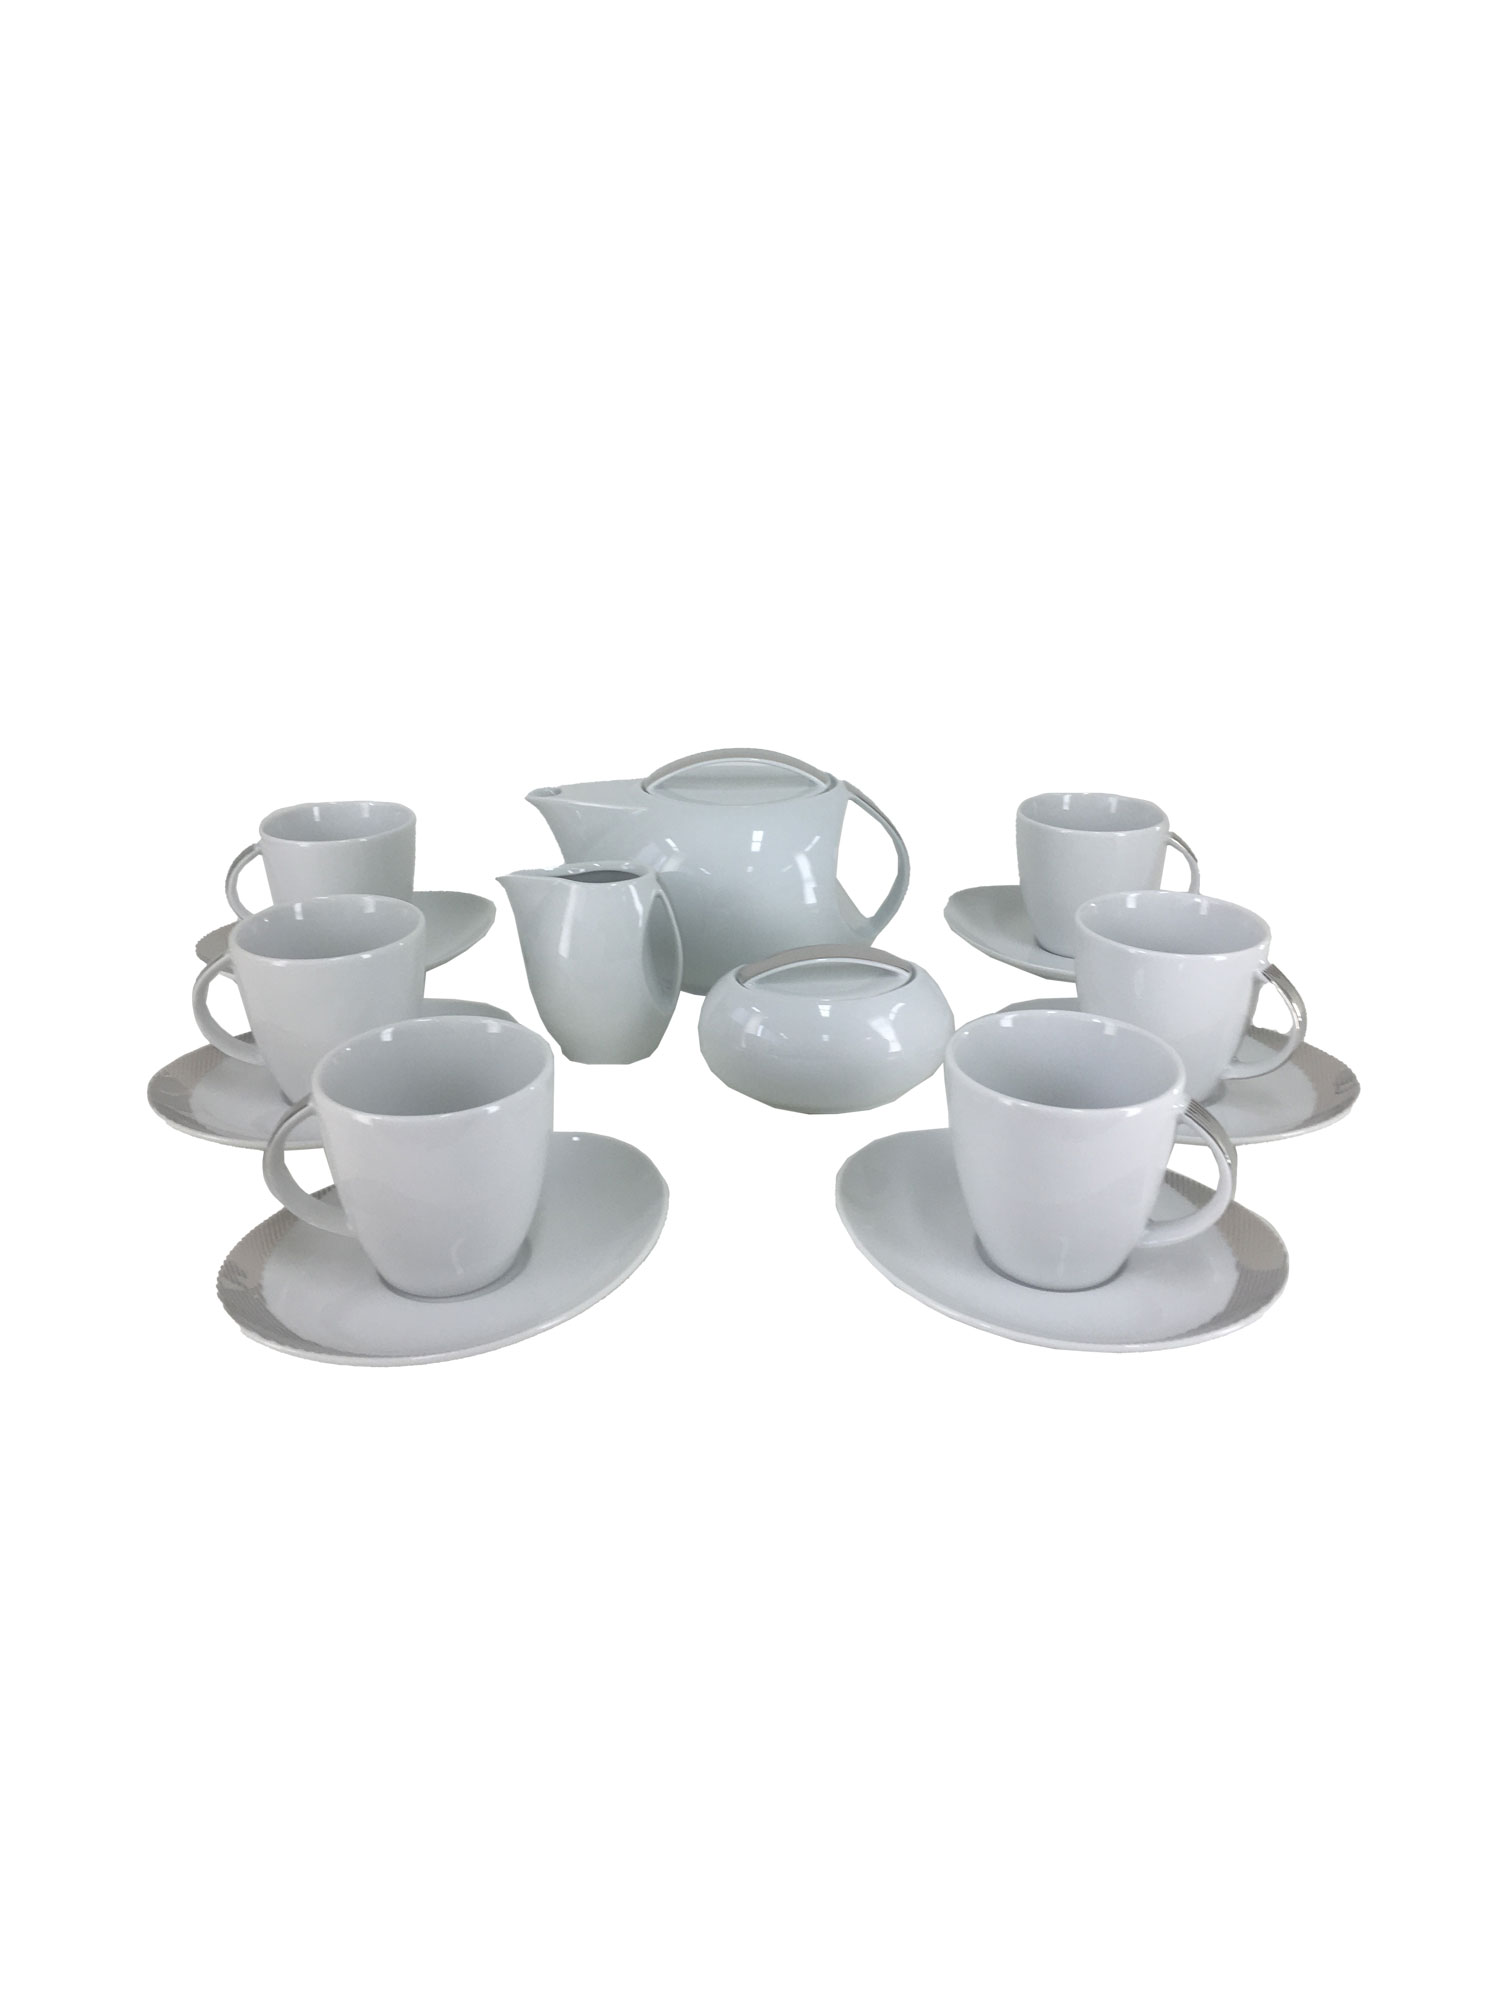 Чайный сервиз Loos на 6 персон 17 предметов декор Платиновые полоски . Фарфор Тхун, Чехия.